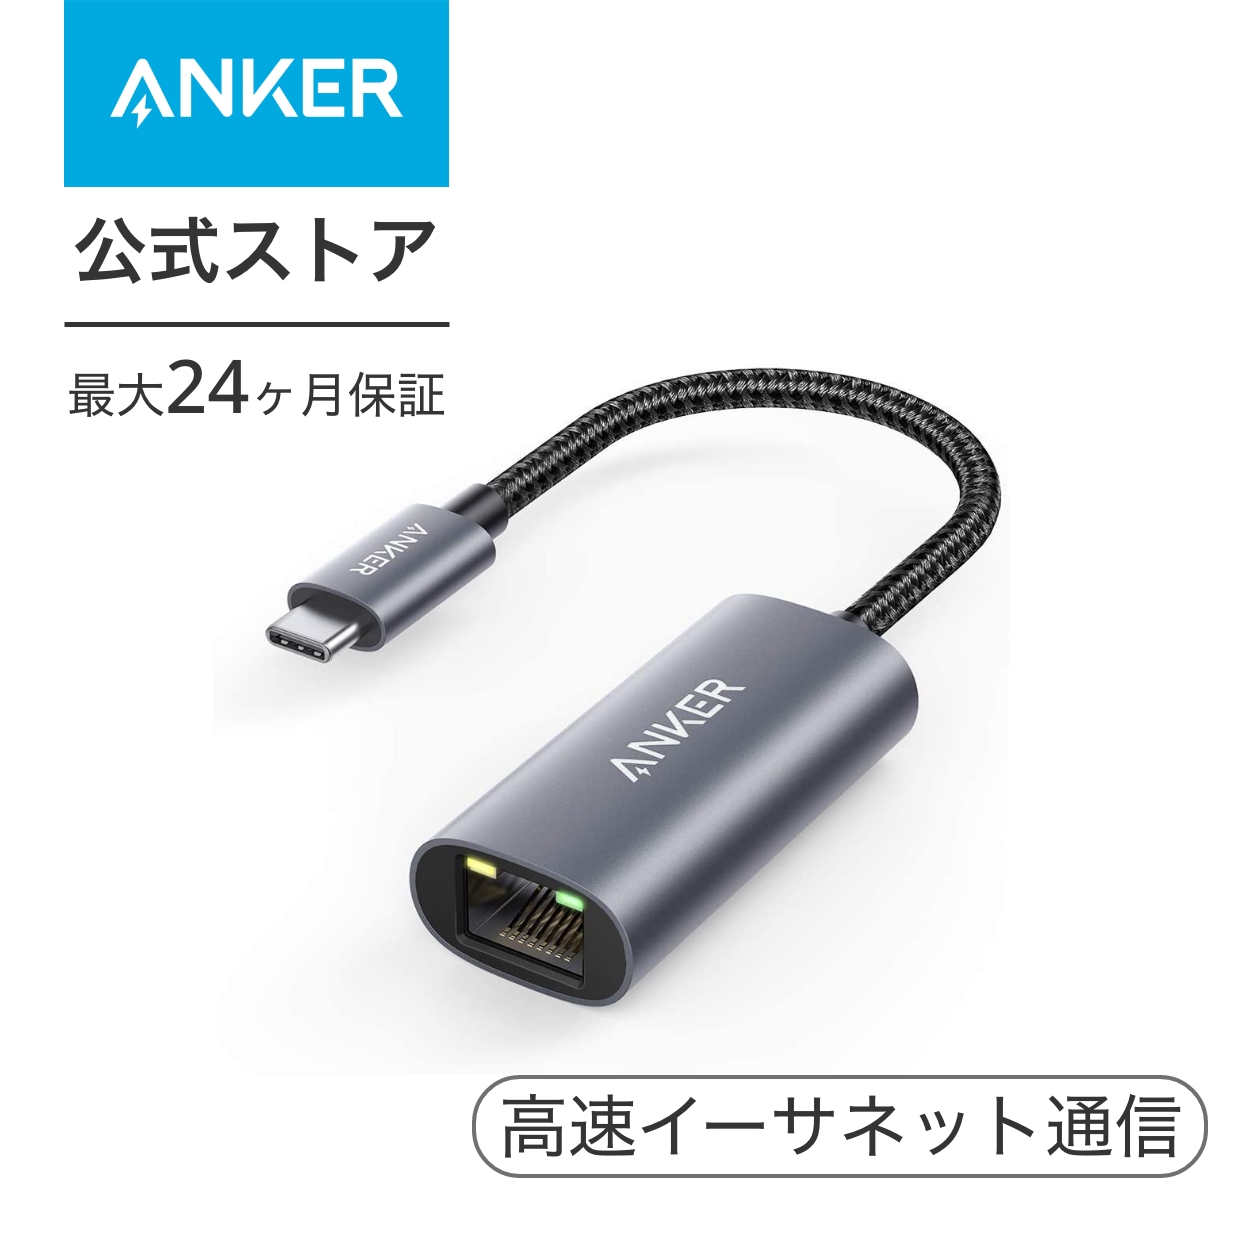 Anker PowerExpand USB-C  イーサネットアダプタ 1Gbps 高速イーサネット通信 MacBook iPad Pro 用